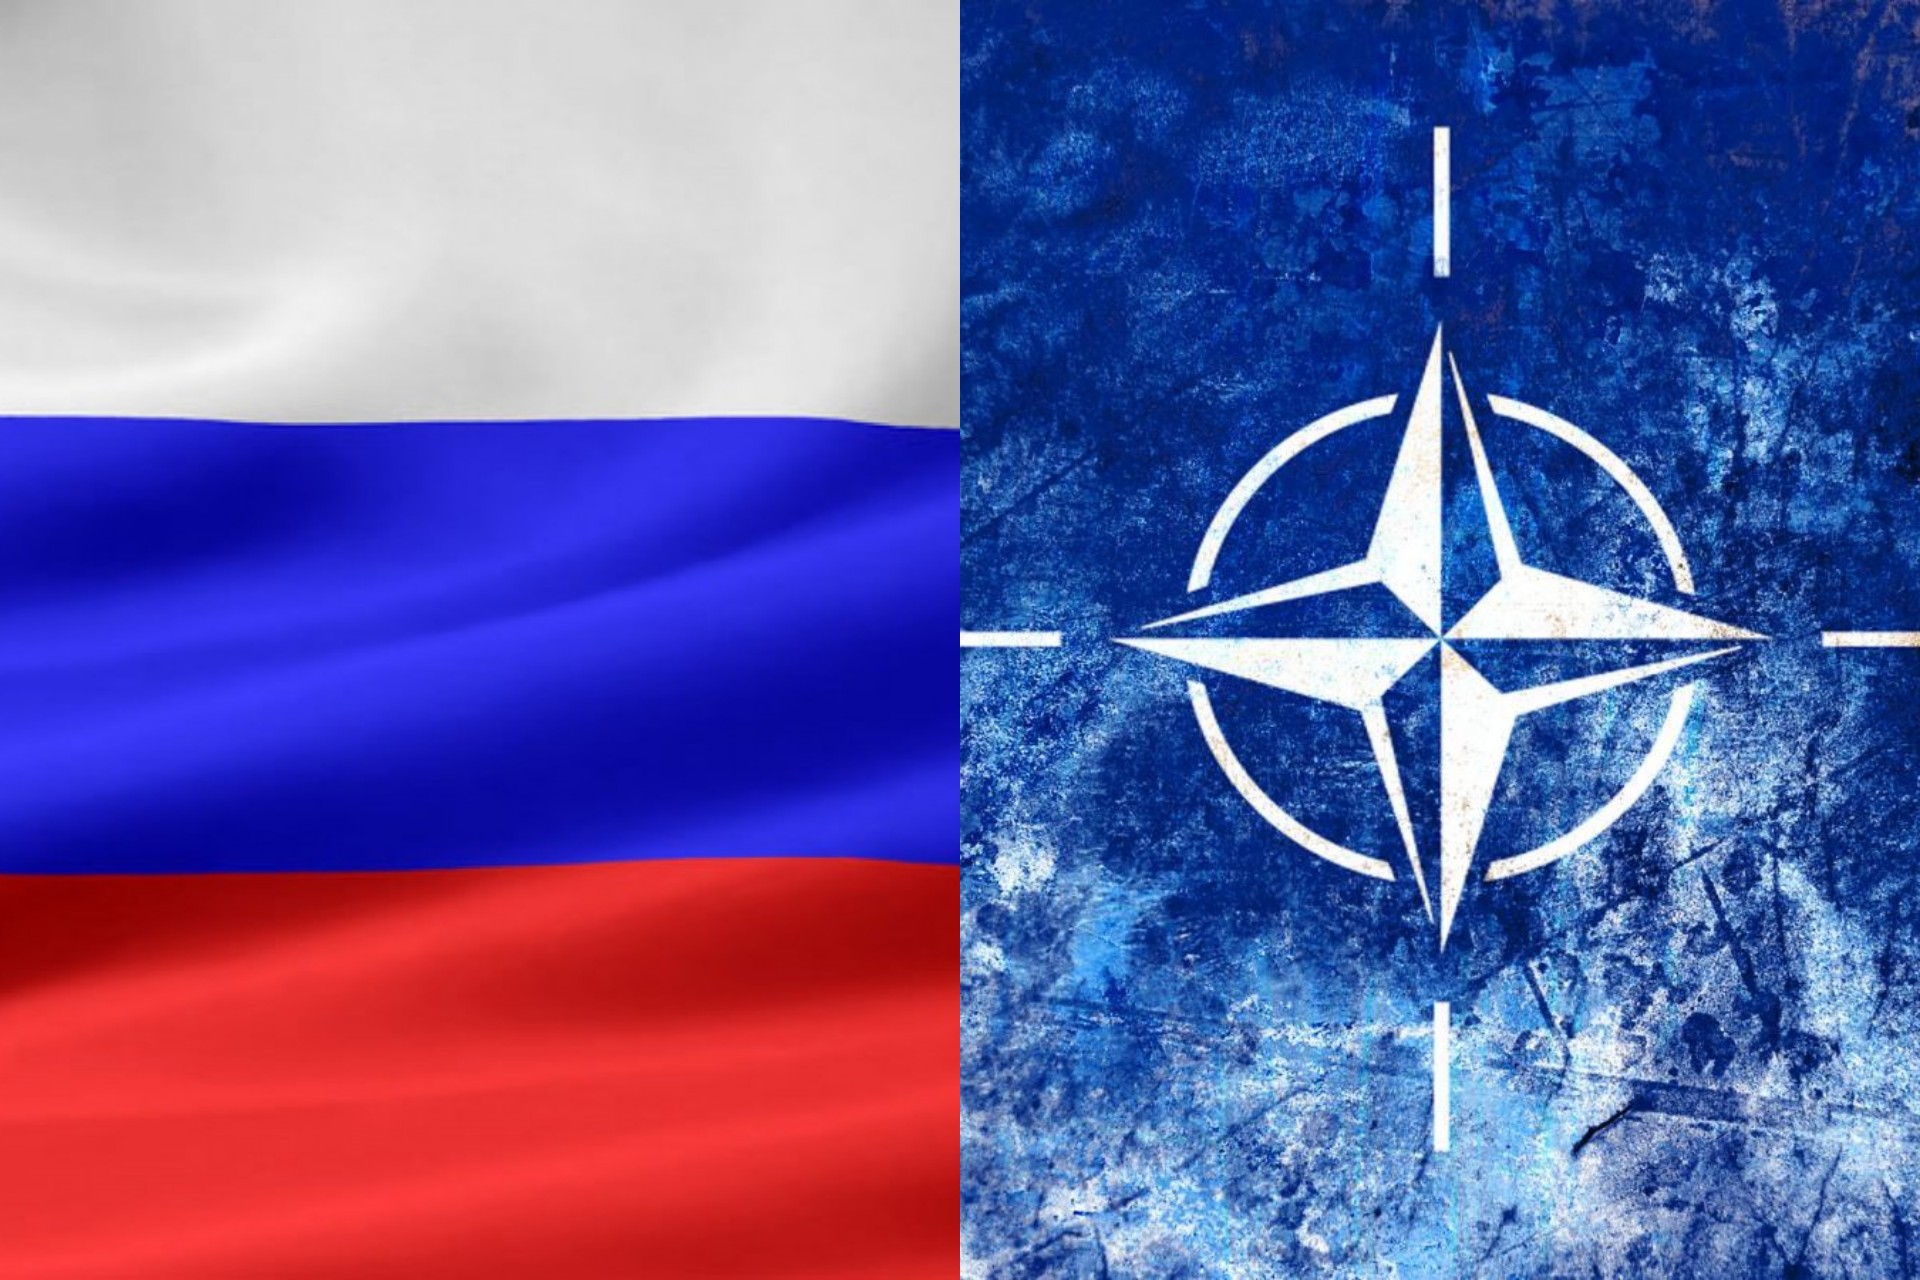 Нато 32. Флаг НАТО И РФ. Украина РФ НАТО флаг. НАТО против РФ. Противостояние России и НАТО.